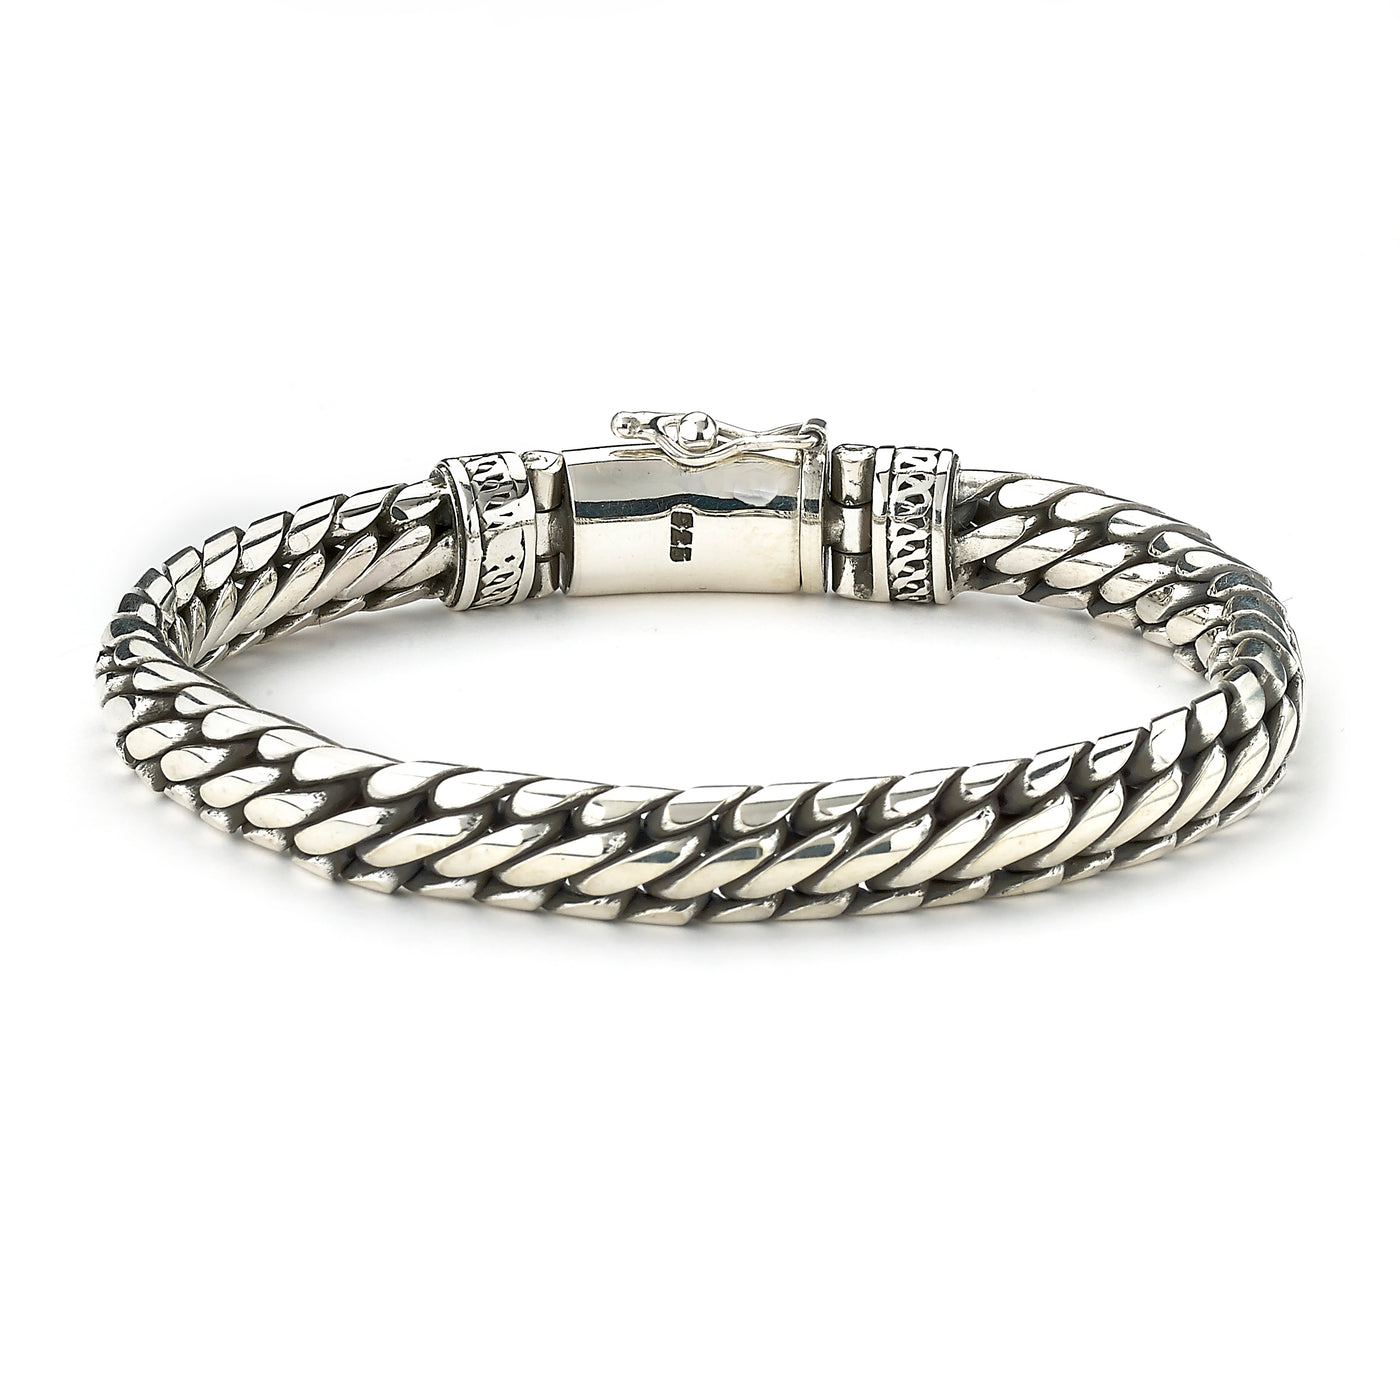 Sterling Silver 10mm Woven Chain "Terzetto" Bracelet